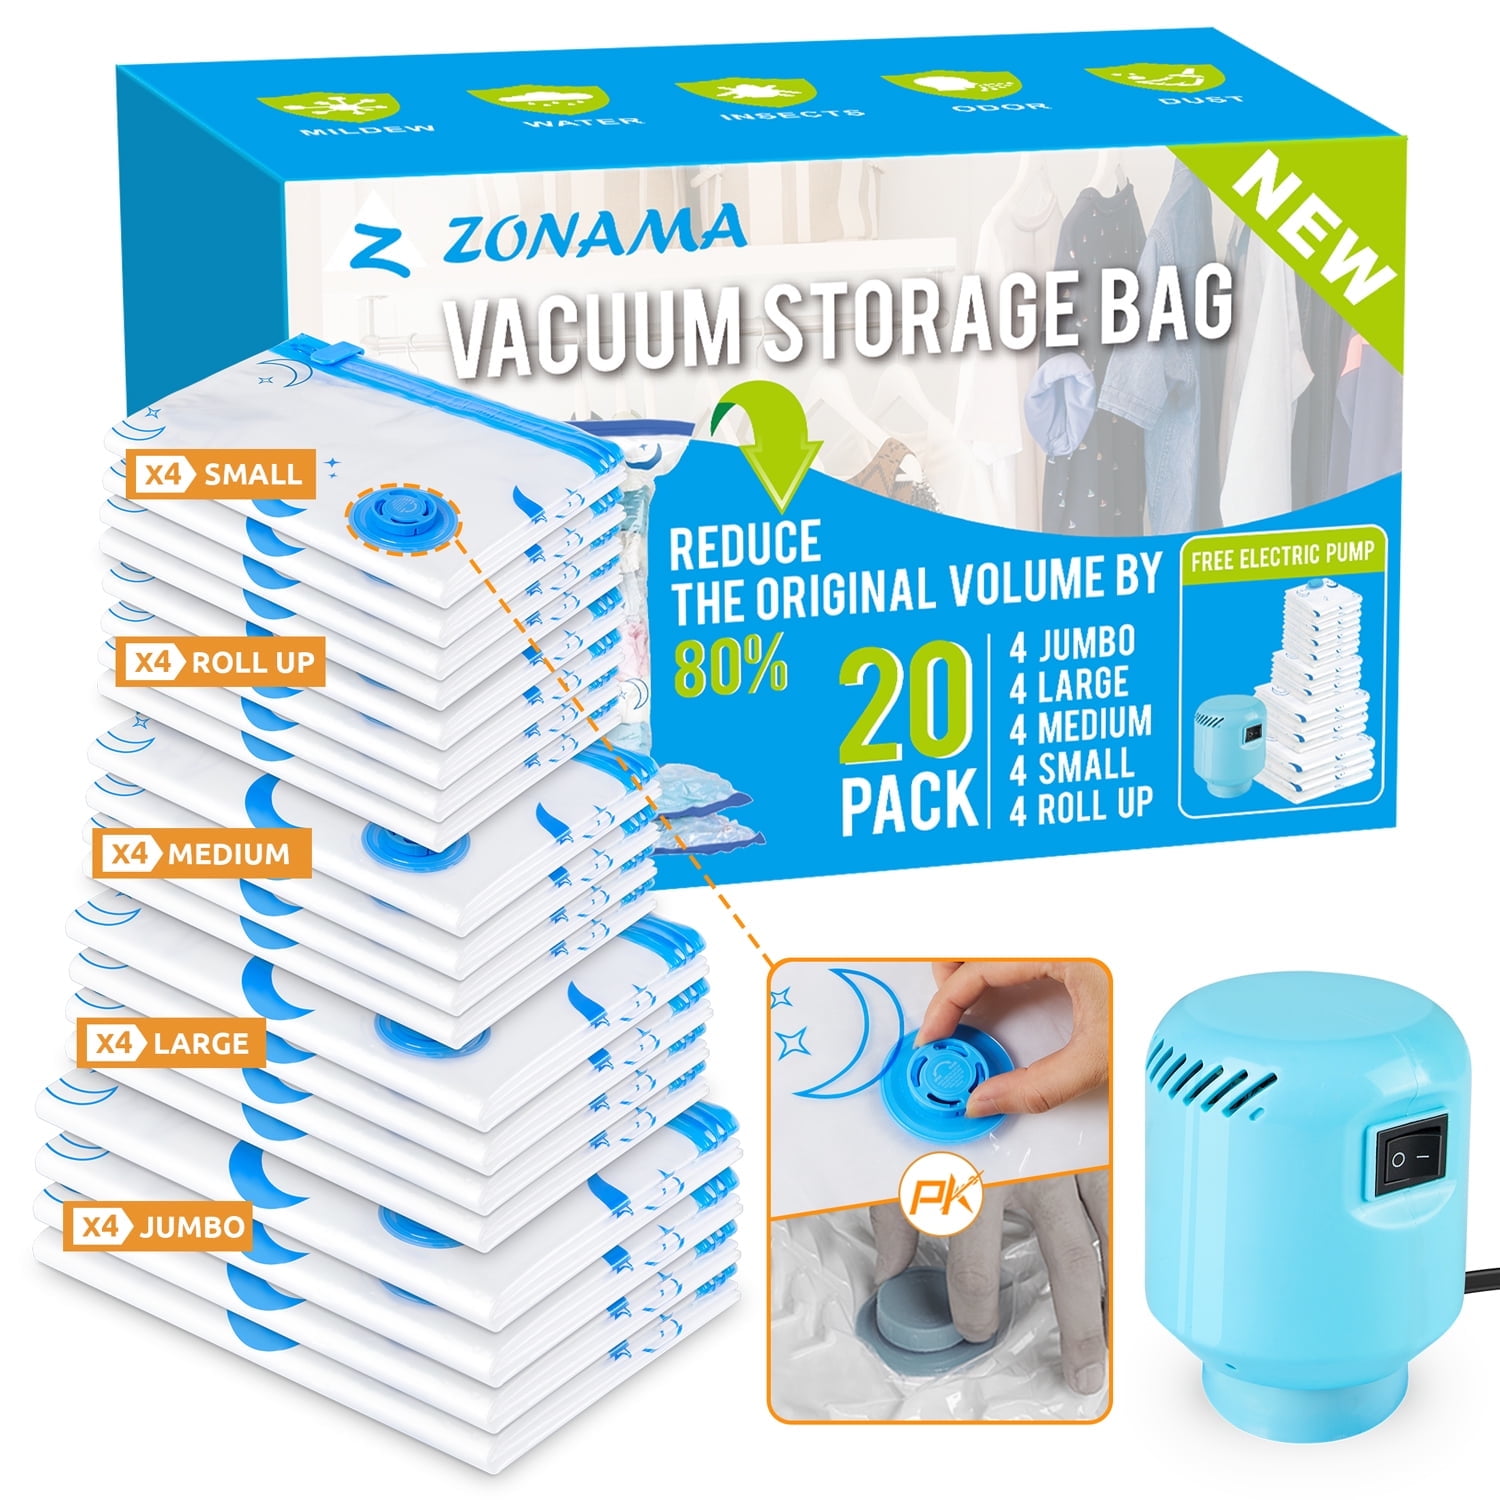 Cube Vacuum Storage Bags Hot Compress Bag Vacuum Bags with Air Valve -  China Large Plastic Storage Bag and Cube Vacuum Bag price